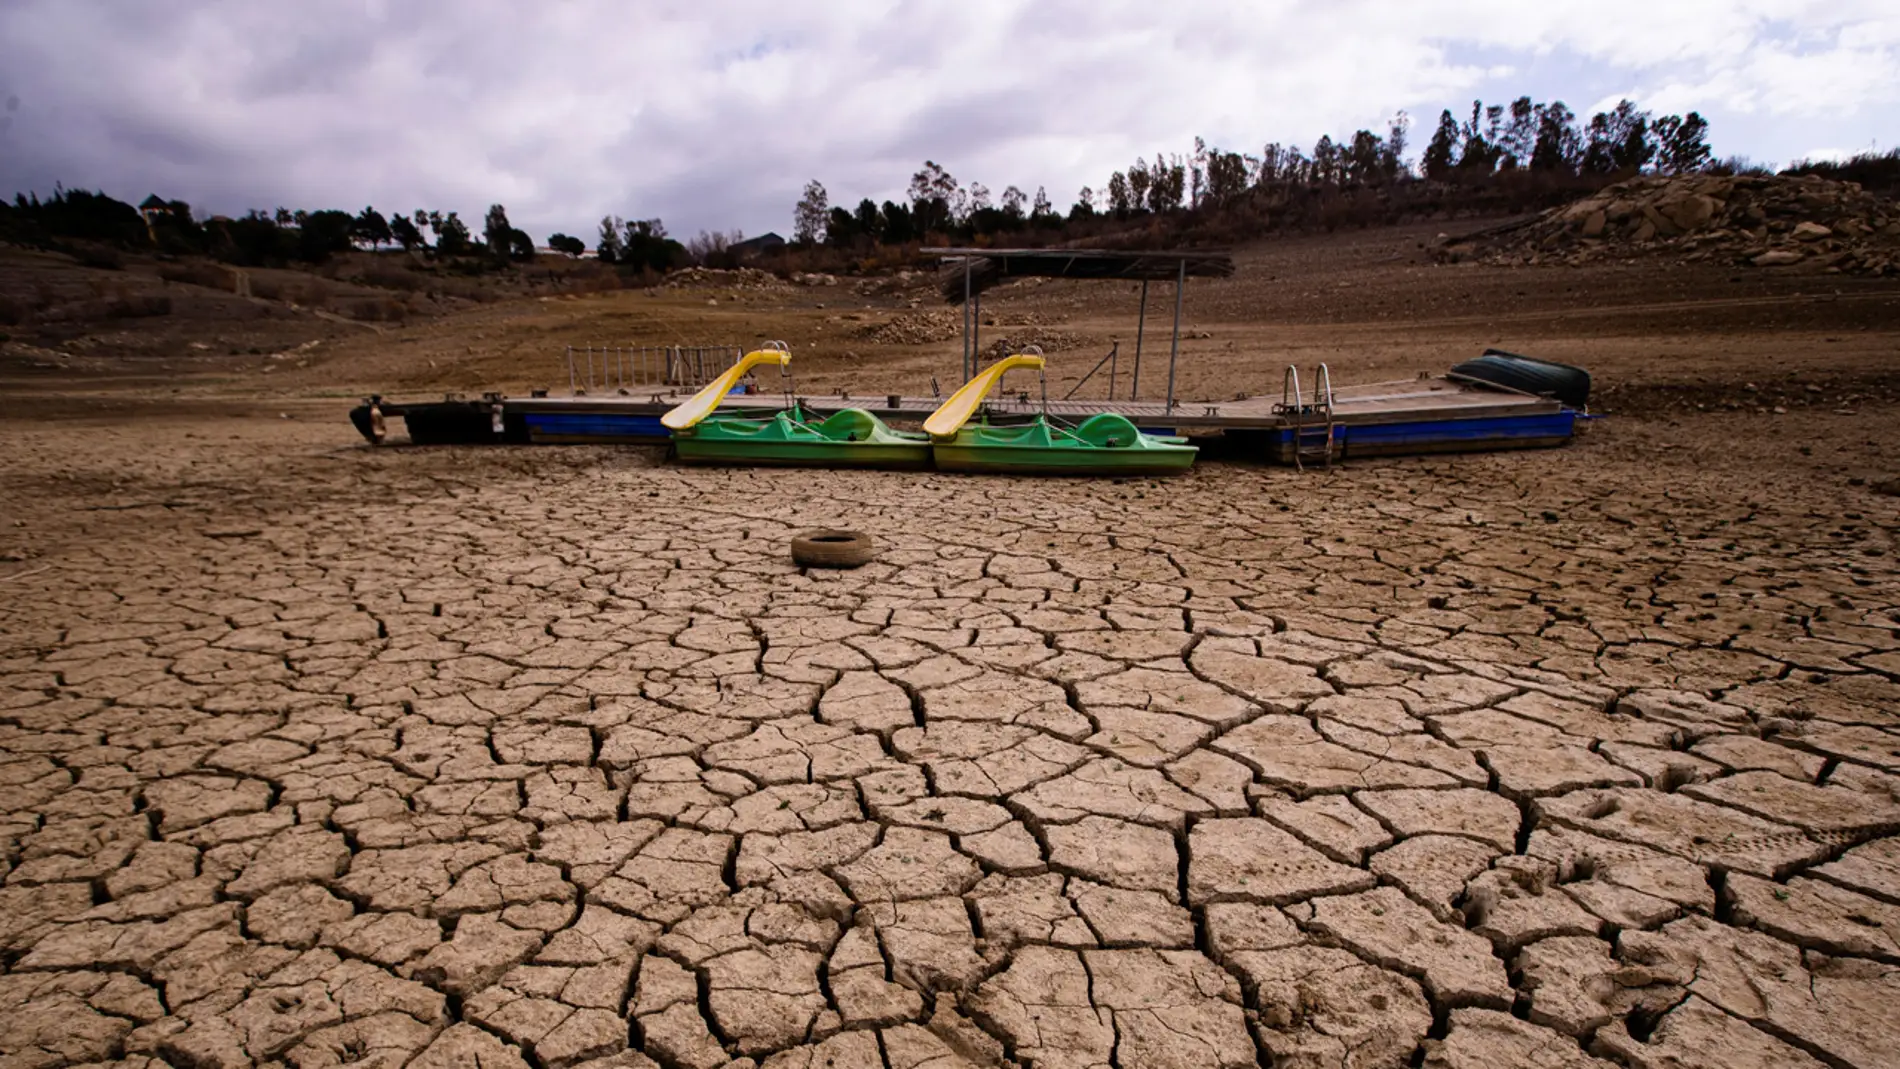 Emabalse de la Viñuela (Málaga) afectado por una gran sequía.